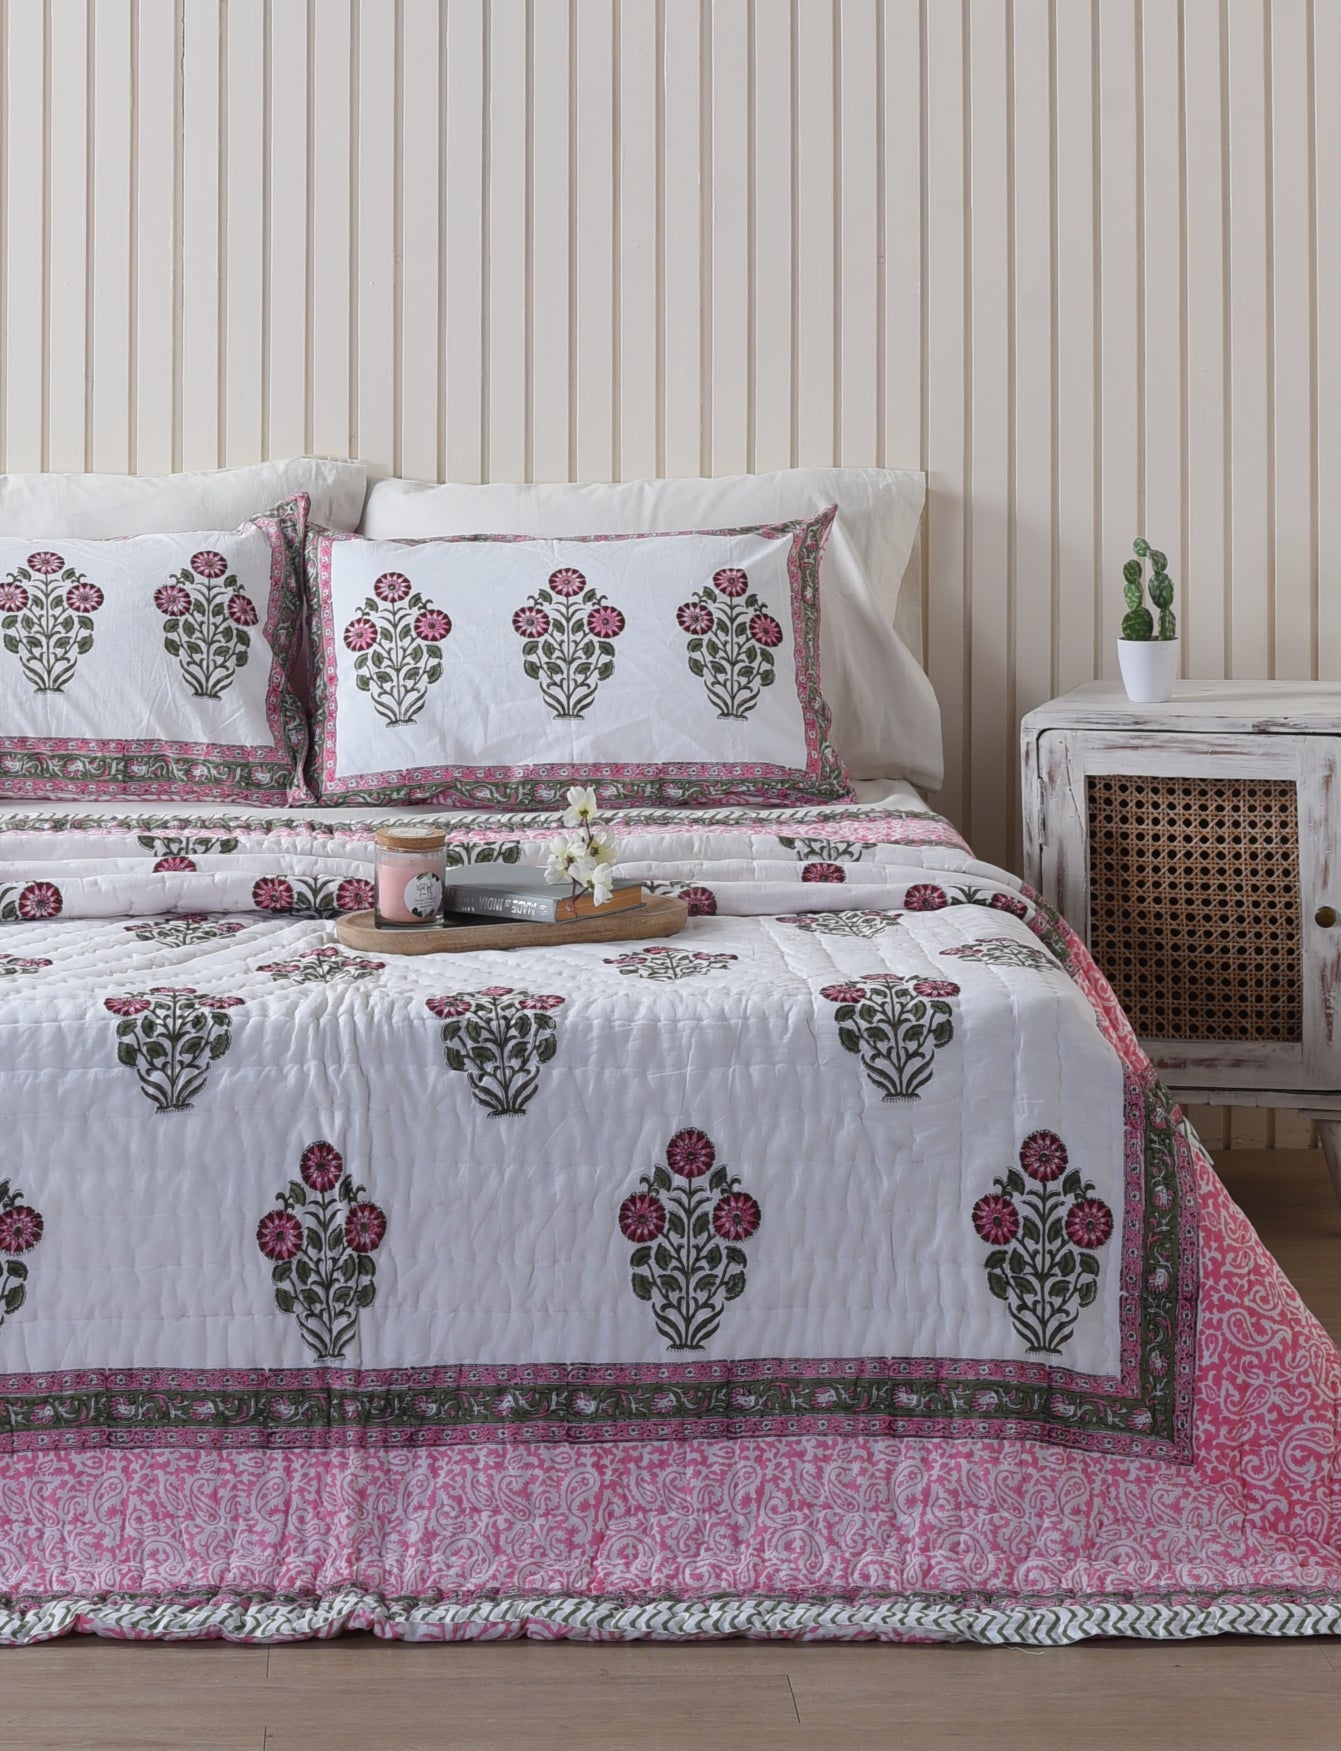 Jaipuri Razai With Pillow Covers - Pink Iris